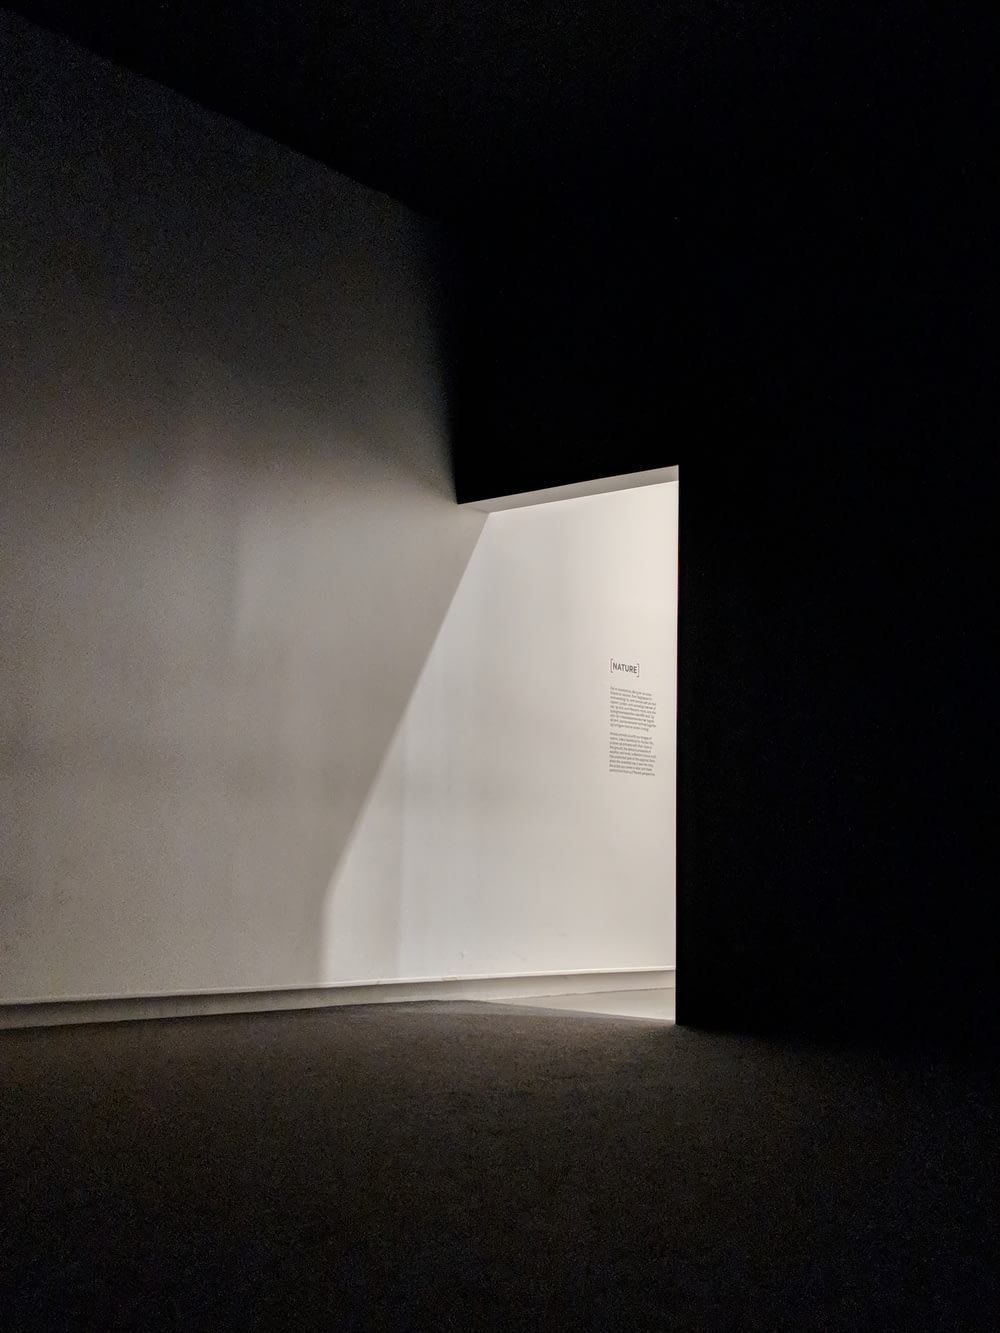 Una habitación vacía con una luz que entra por la pared